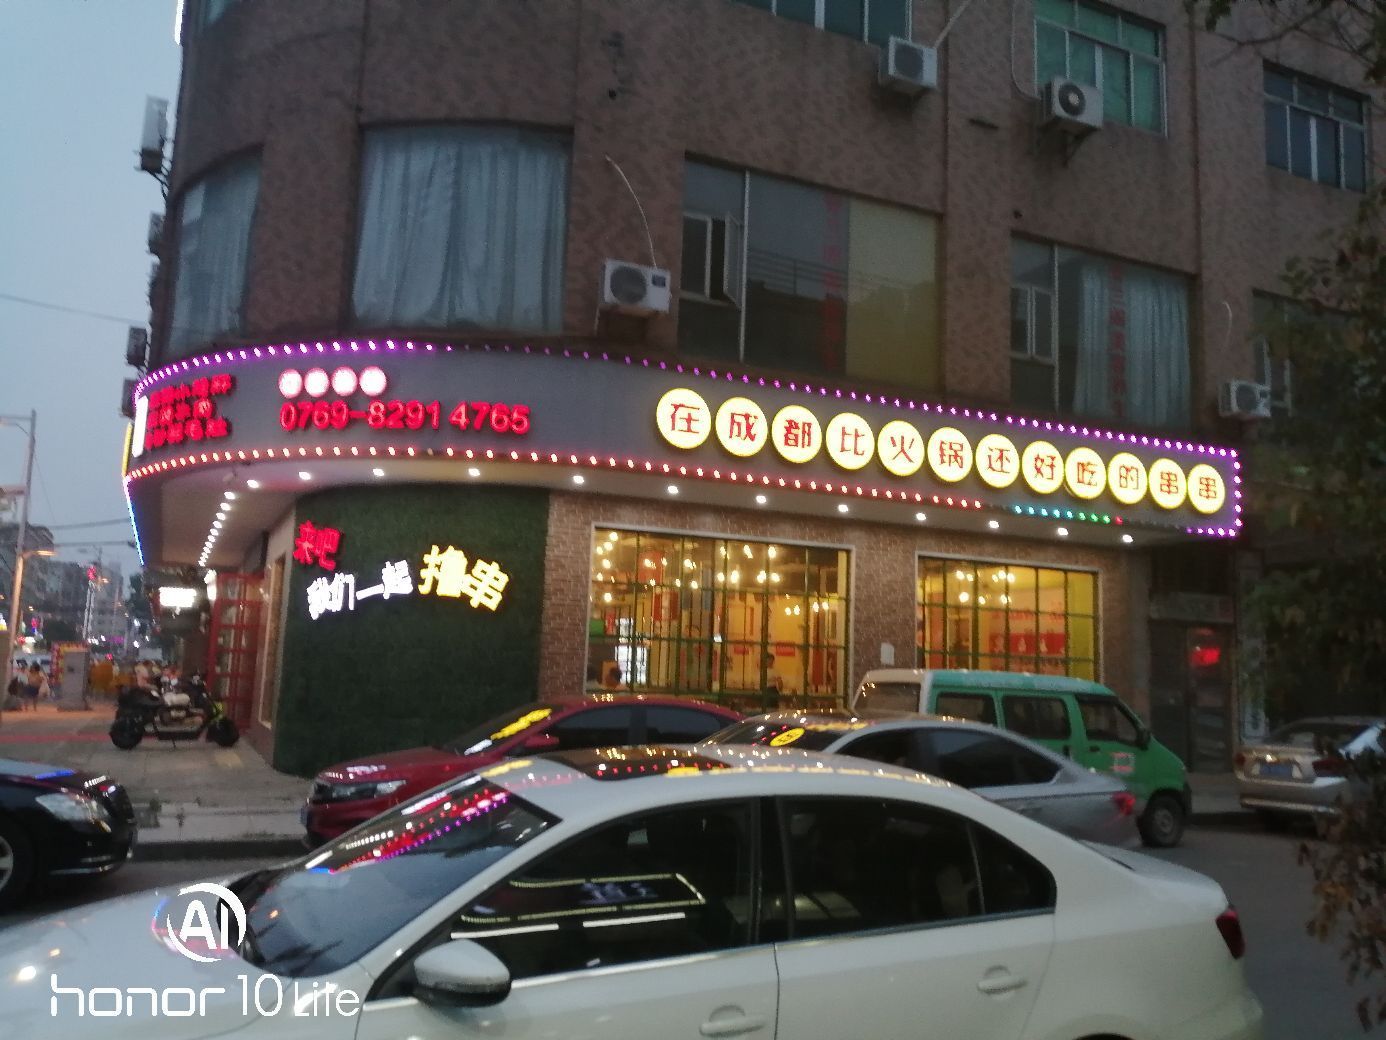 四川火锅店，在和成都比的好吃的串串店，位于广东省东莞市沙田镇。这里，生意兴隆，位置也比较好，说不上是